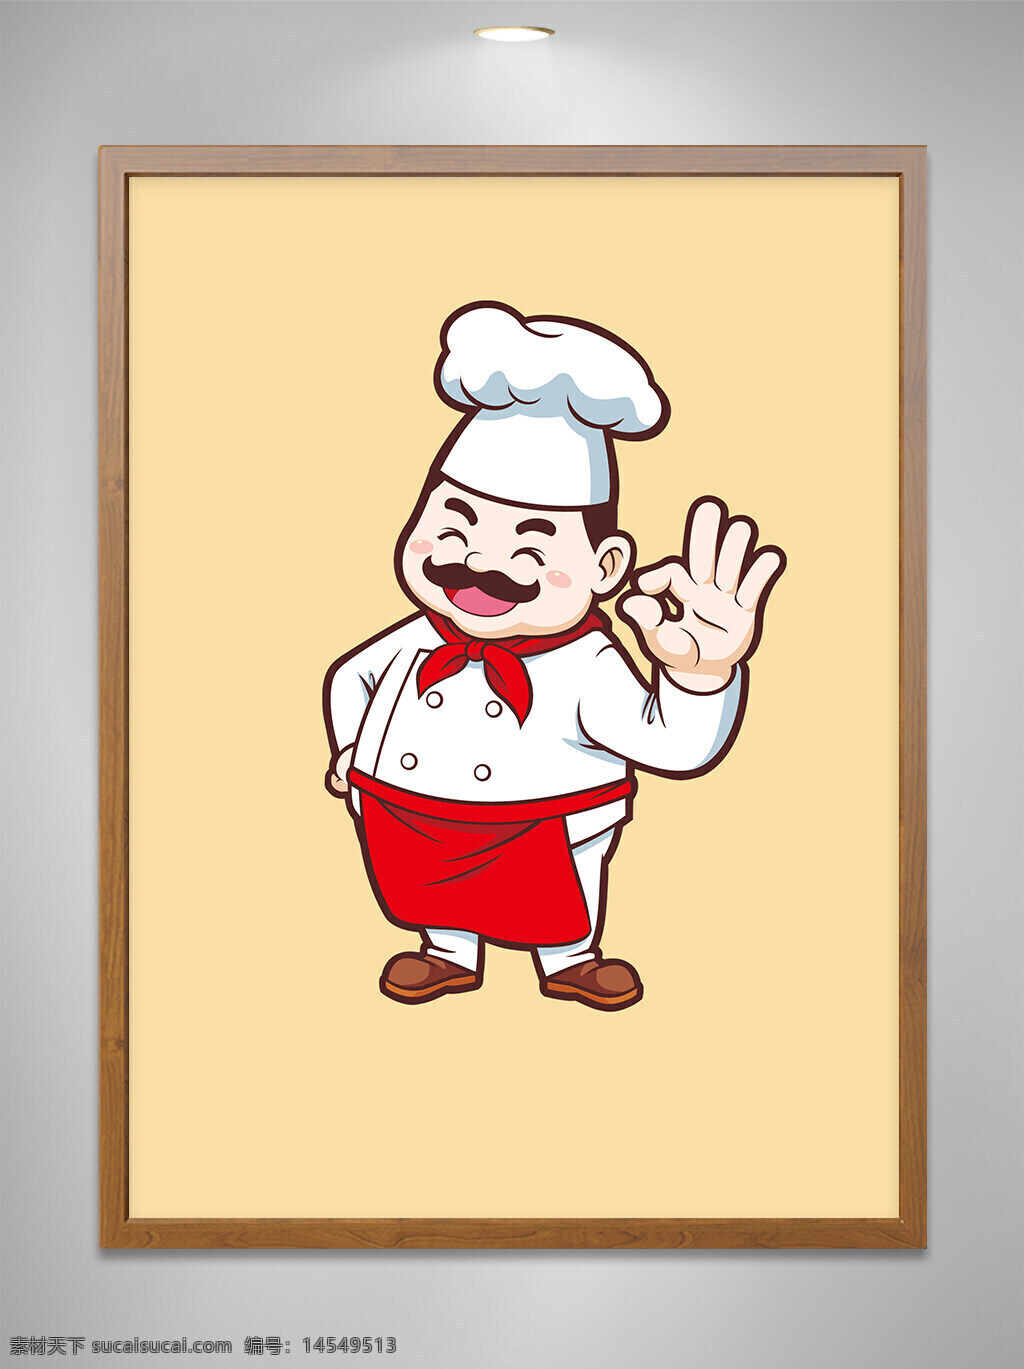 卡通原创 卡通吉祥物 卡通人物 卡通中年男厨师 卡通中年男厨师做ok手势 餐饮 ai矢量图